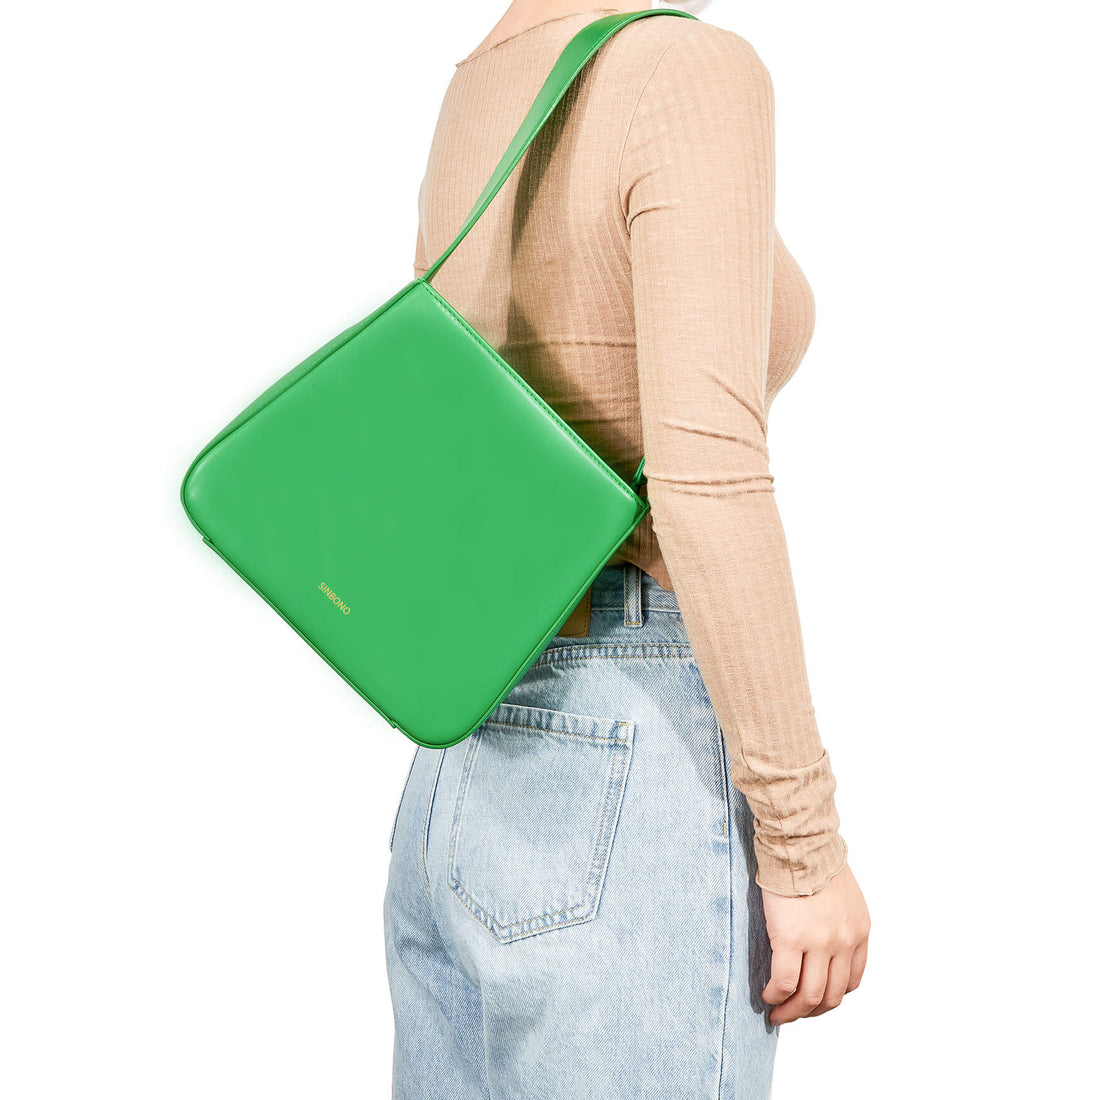 SINBONO Women Shoulder Square Bag Grass Green - Vegan Leather Shoulder Bag